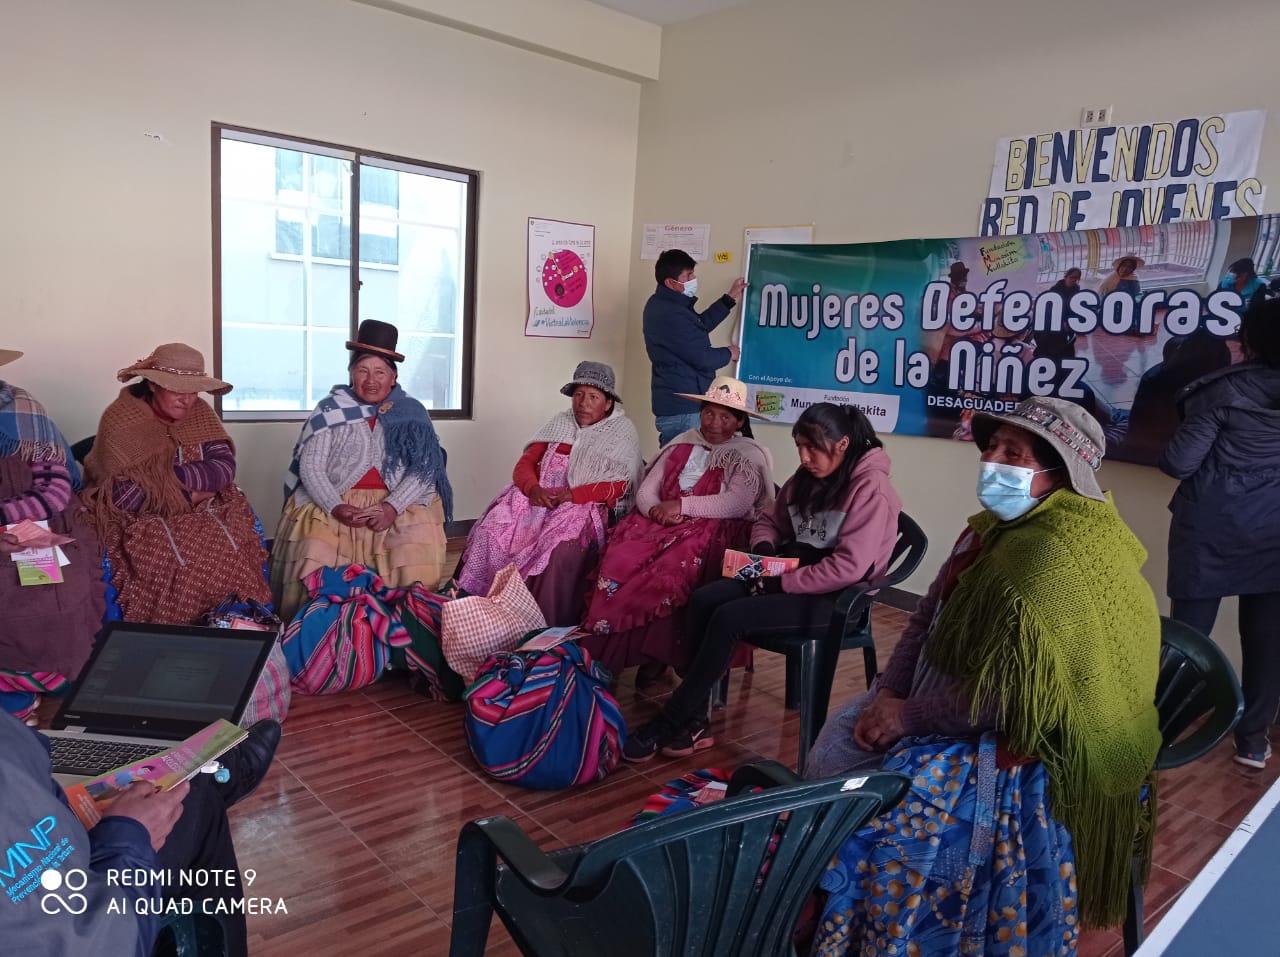 Mujeres Defensoras de la Niñez del municipio de Desaguadero conocieron los alcances de la labor de la Defensoría del Pueblo